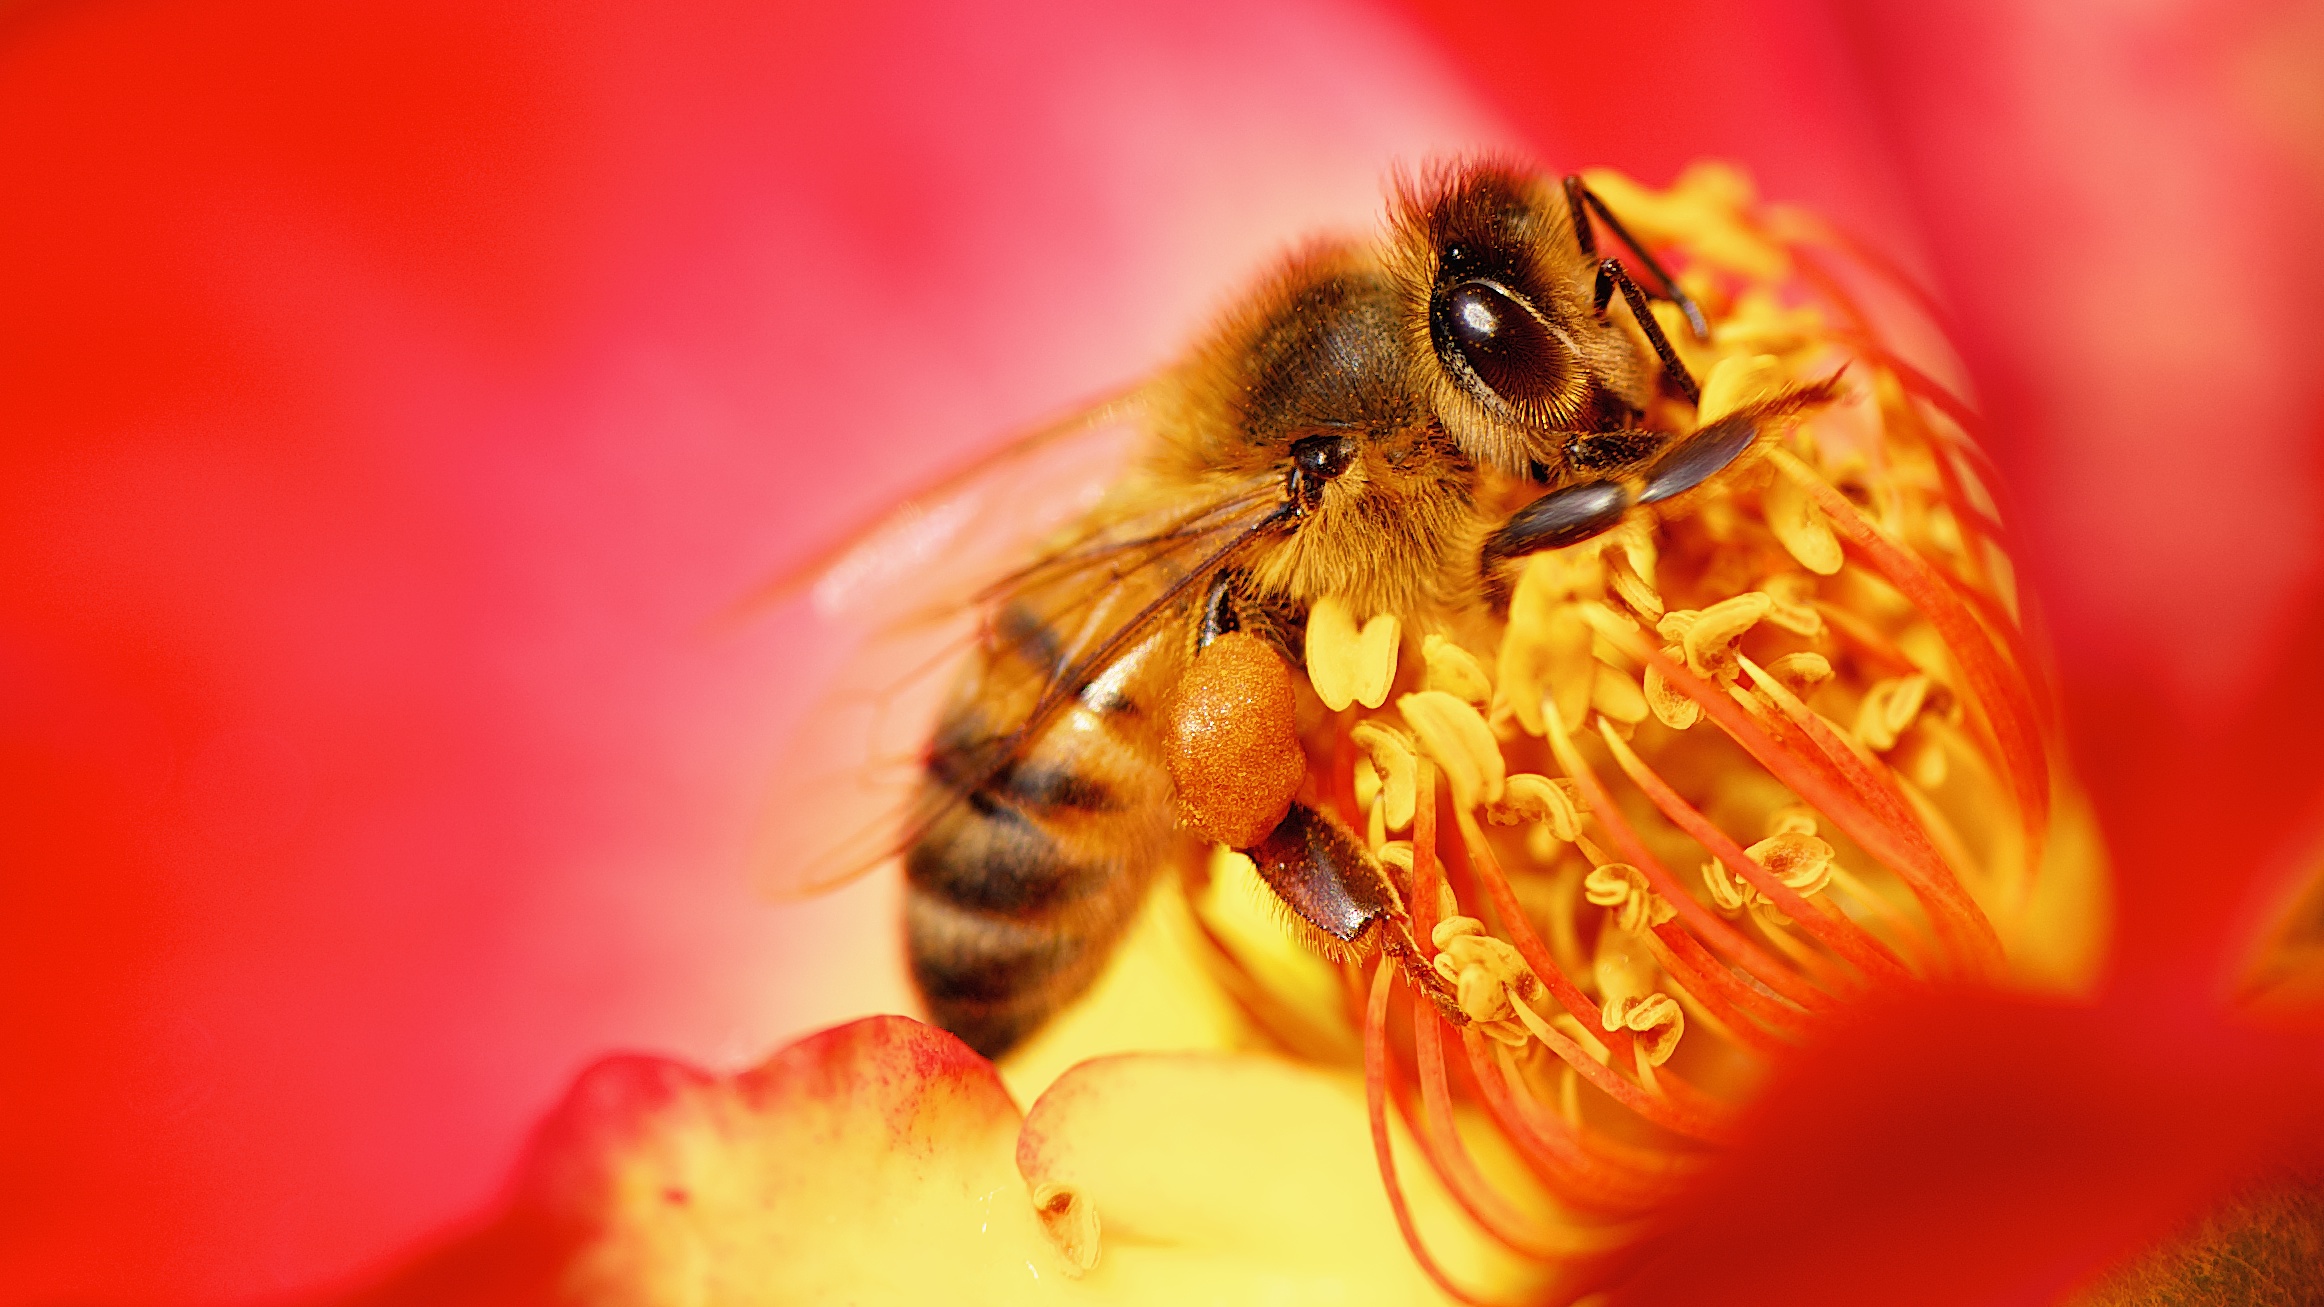 Les abeilles bientôt vaccinées contre les maladies ? © Danny Perez Photography, Flickr